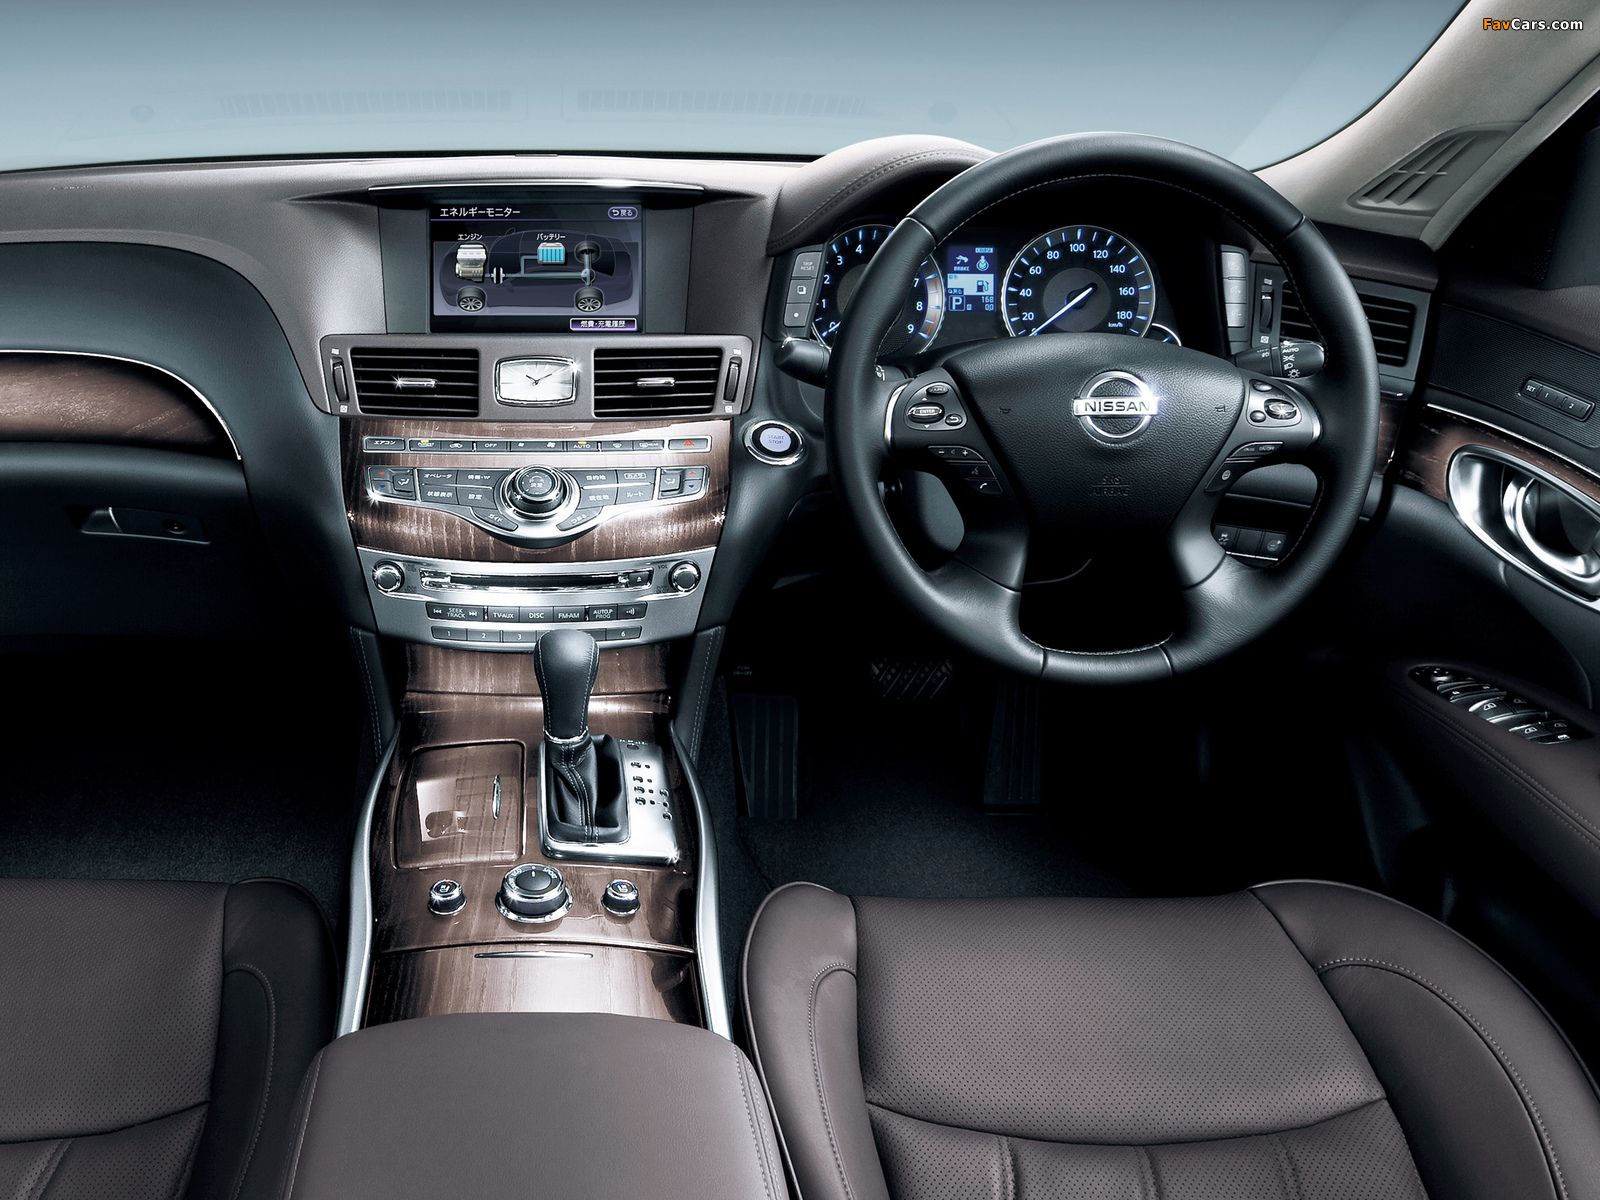 Nissan Fuga interior - Cockpit